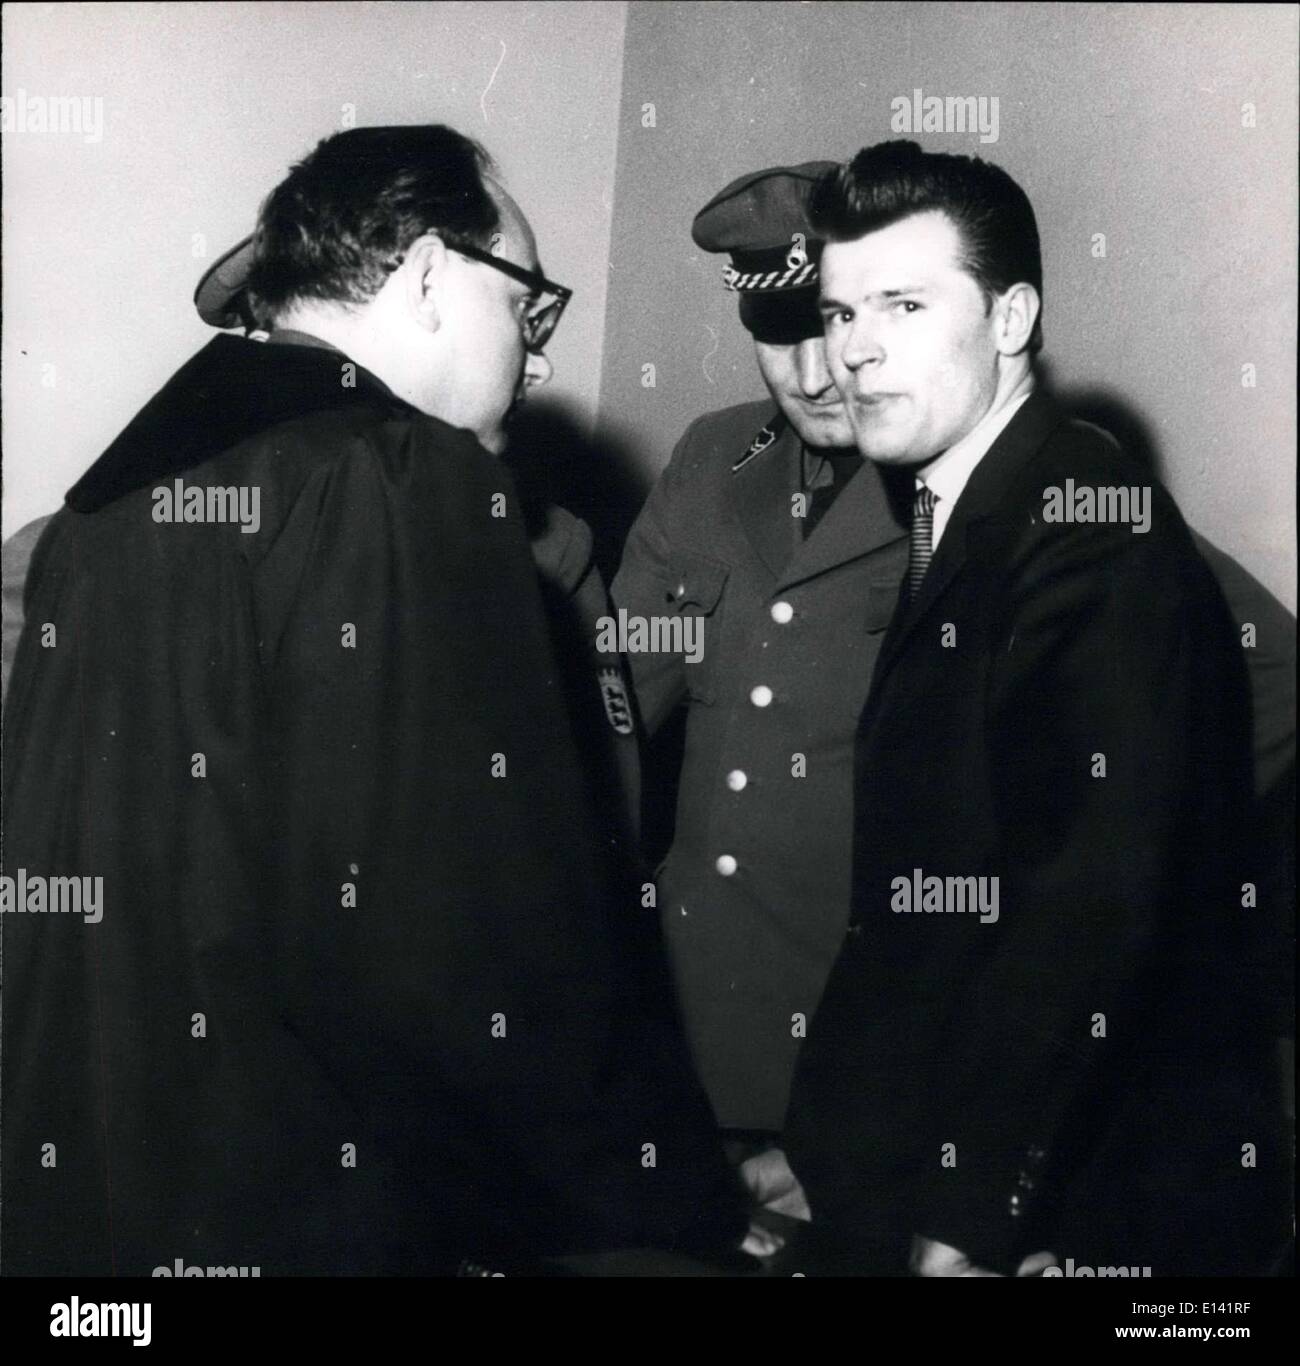 31 mars 2012 - 15 mois d'emprisonnement pour Hanke : Hier (11.10.) Fritz Hanke (22) a été condamné à 15 mois de prison par la Cour d'Assises de Stuttgart. L'arrêt est que Hanke a essayé de tuer une personne par un homicide. Il a abattu le 5 juin 1962 sur un réfugié près de Schierke dans le Harz sur la frontiere entre l'Est et l'ouest de l'Allemagne. Hanke était à l'époque membre de l'Armée de l'Ulbricht-Dictatorship, et a plus tard sauvé lui-même. Photo montre Hanke après le prononcé de la peine avec son défenseur Oteter Konig. Banque D'Images